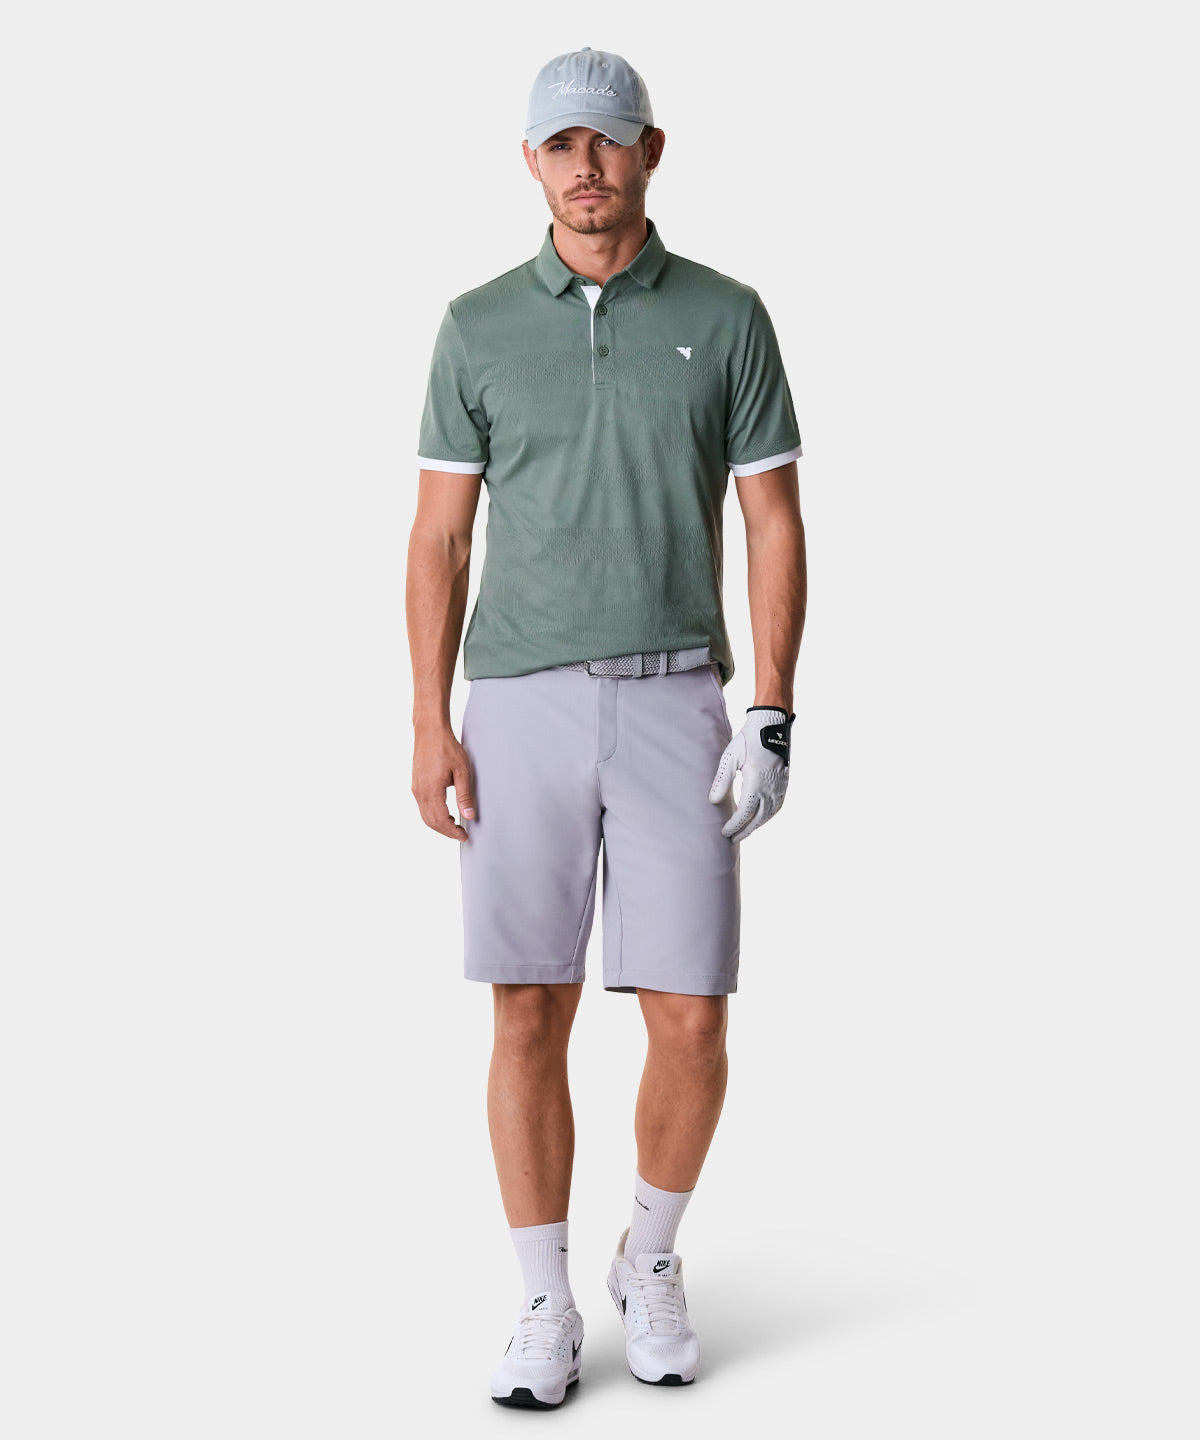 Cole Green Performance Shirt – Macade Golf